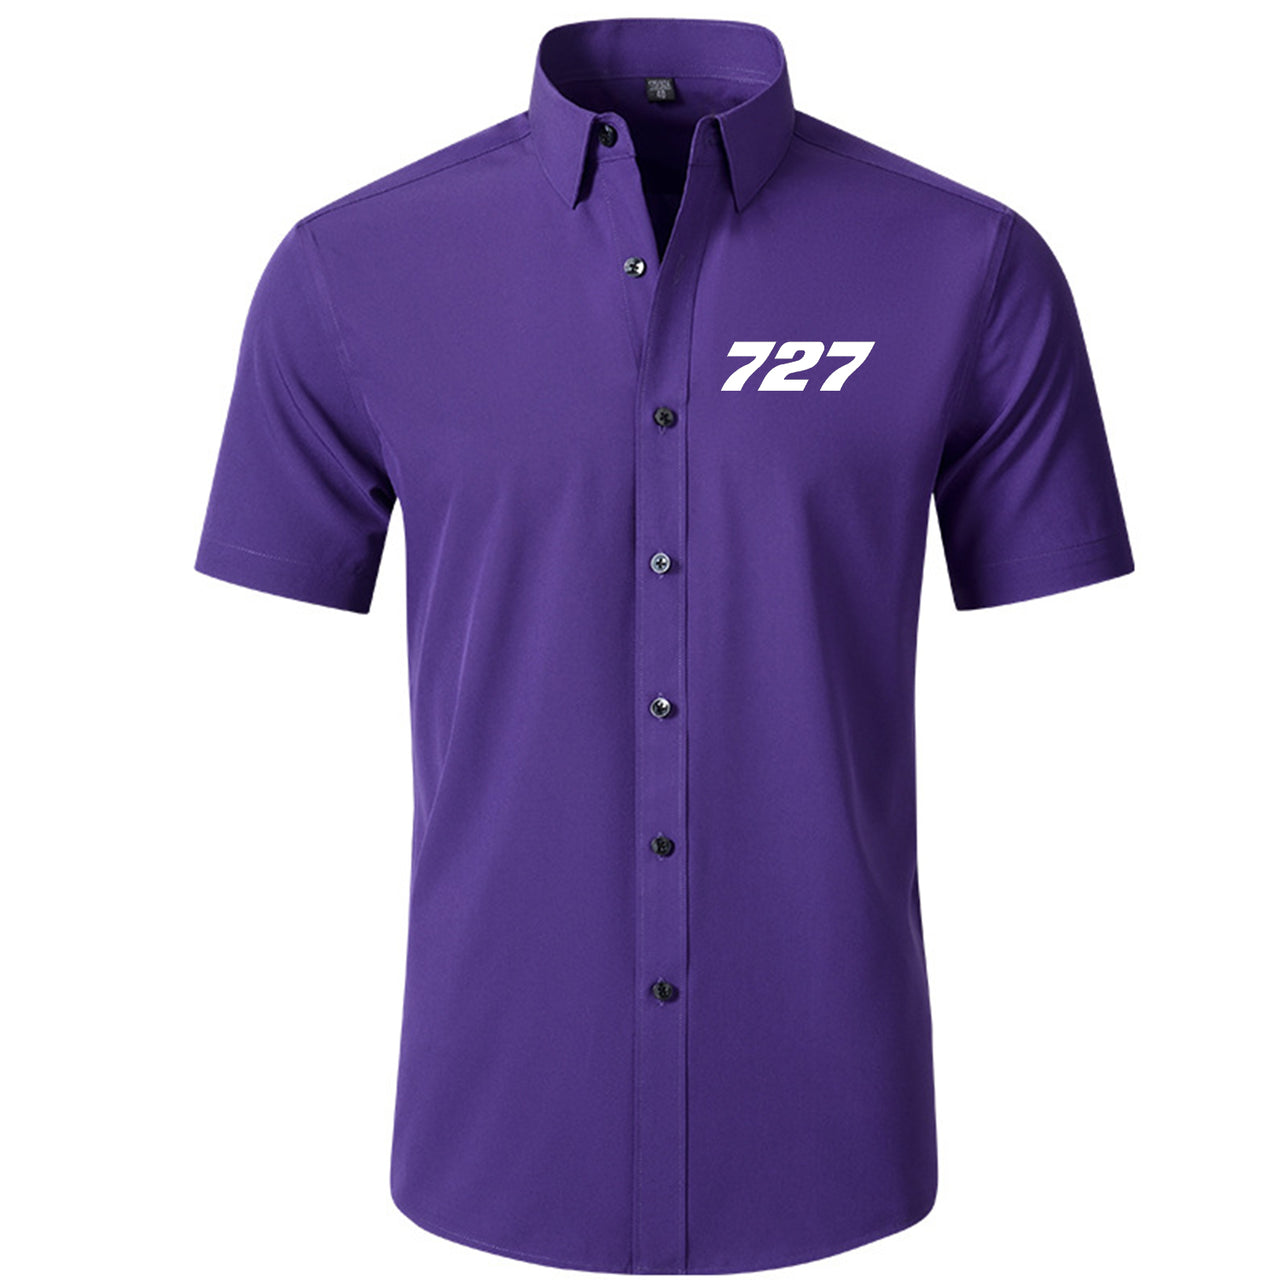 727 Flat Text Designed Short Sleeve Shirts